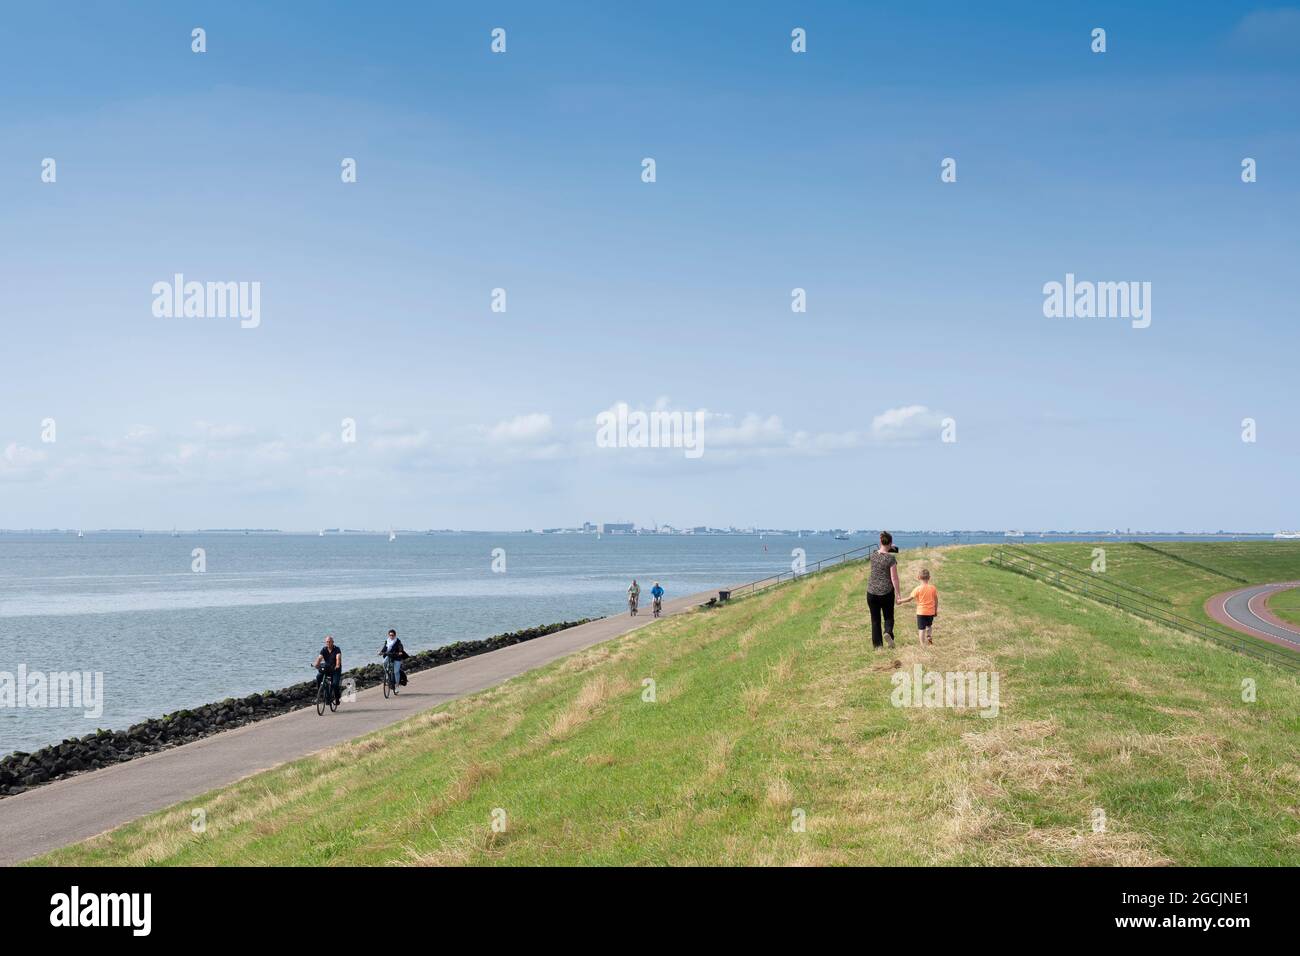 en été, les gens marchent à vélo sur la digue près d'oudeschild, sur l'île hollandaise de texel, sous le ciel bleu Banque D'Images